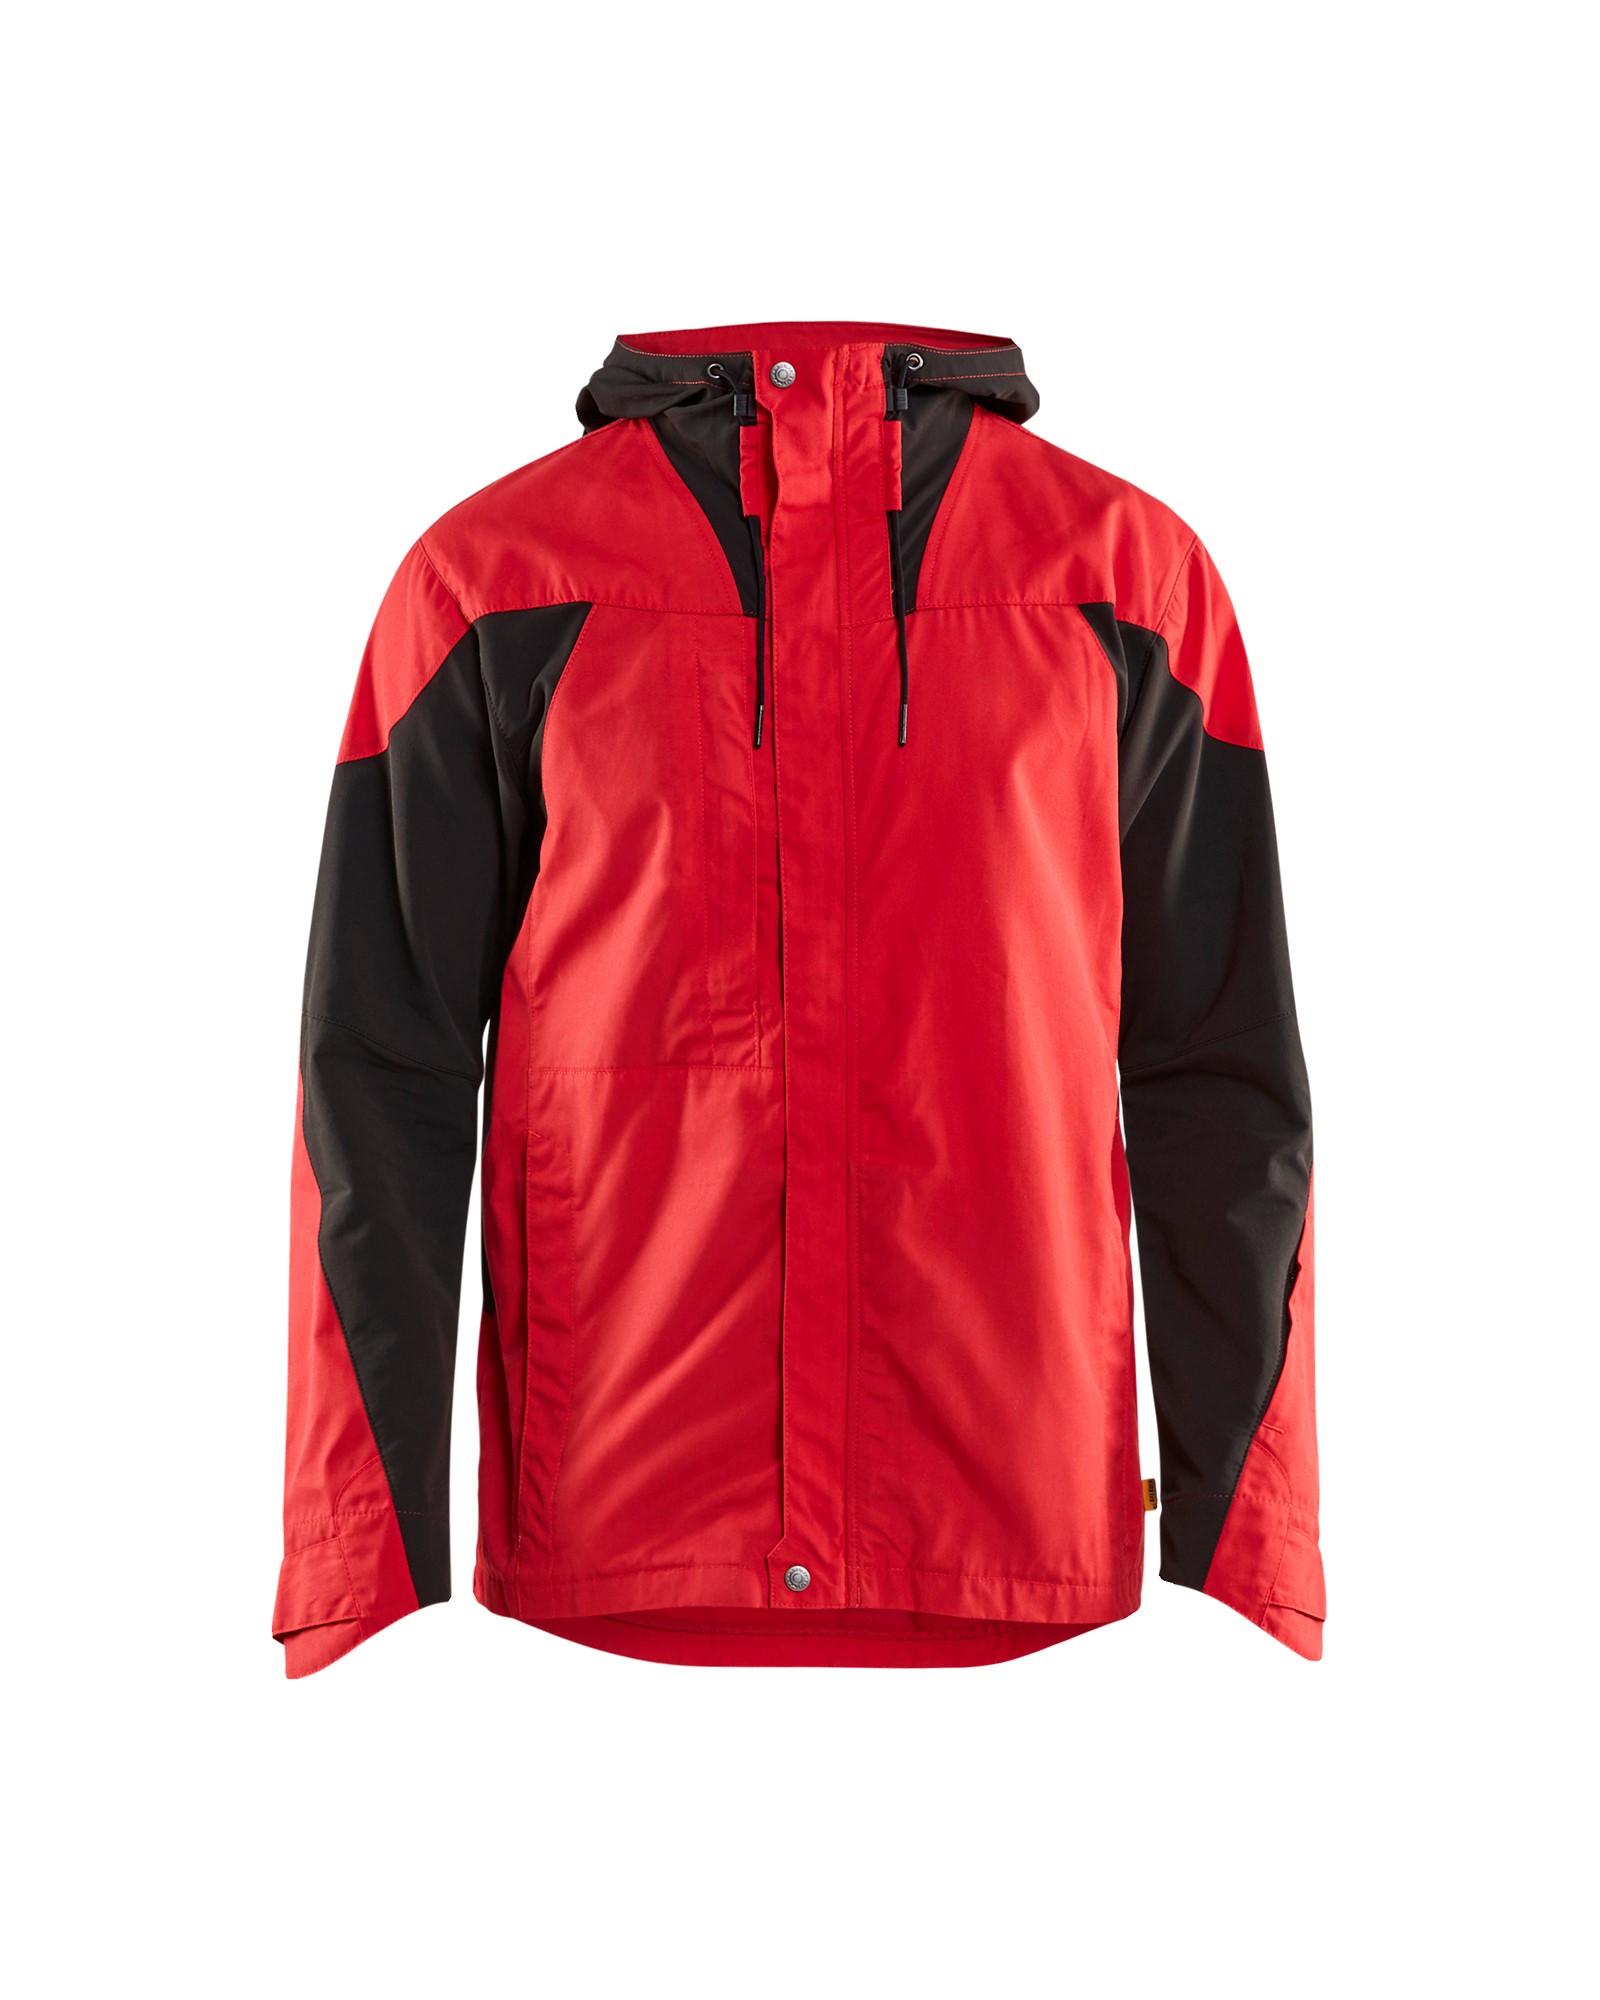 Blåklæder All-round jakke med stretch - Rød Sort - 4759 - Arbejdsjakker - SikkerhedsGiganten